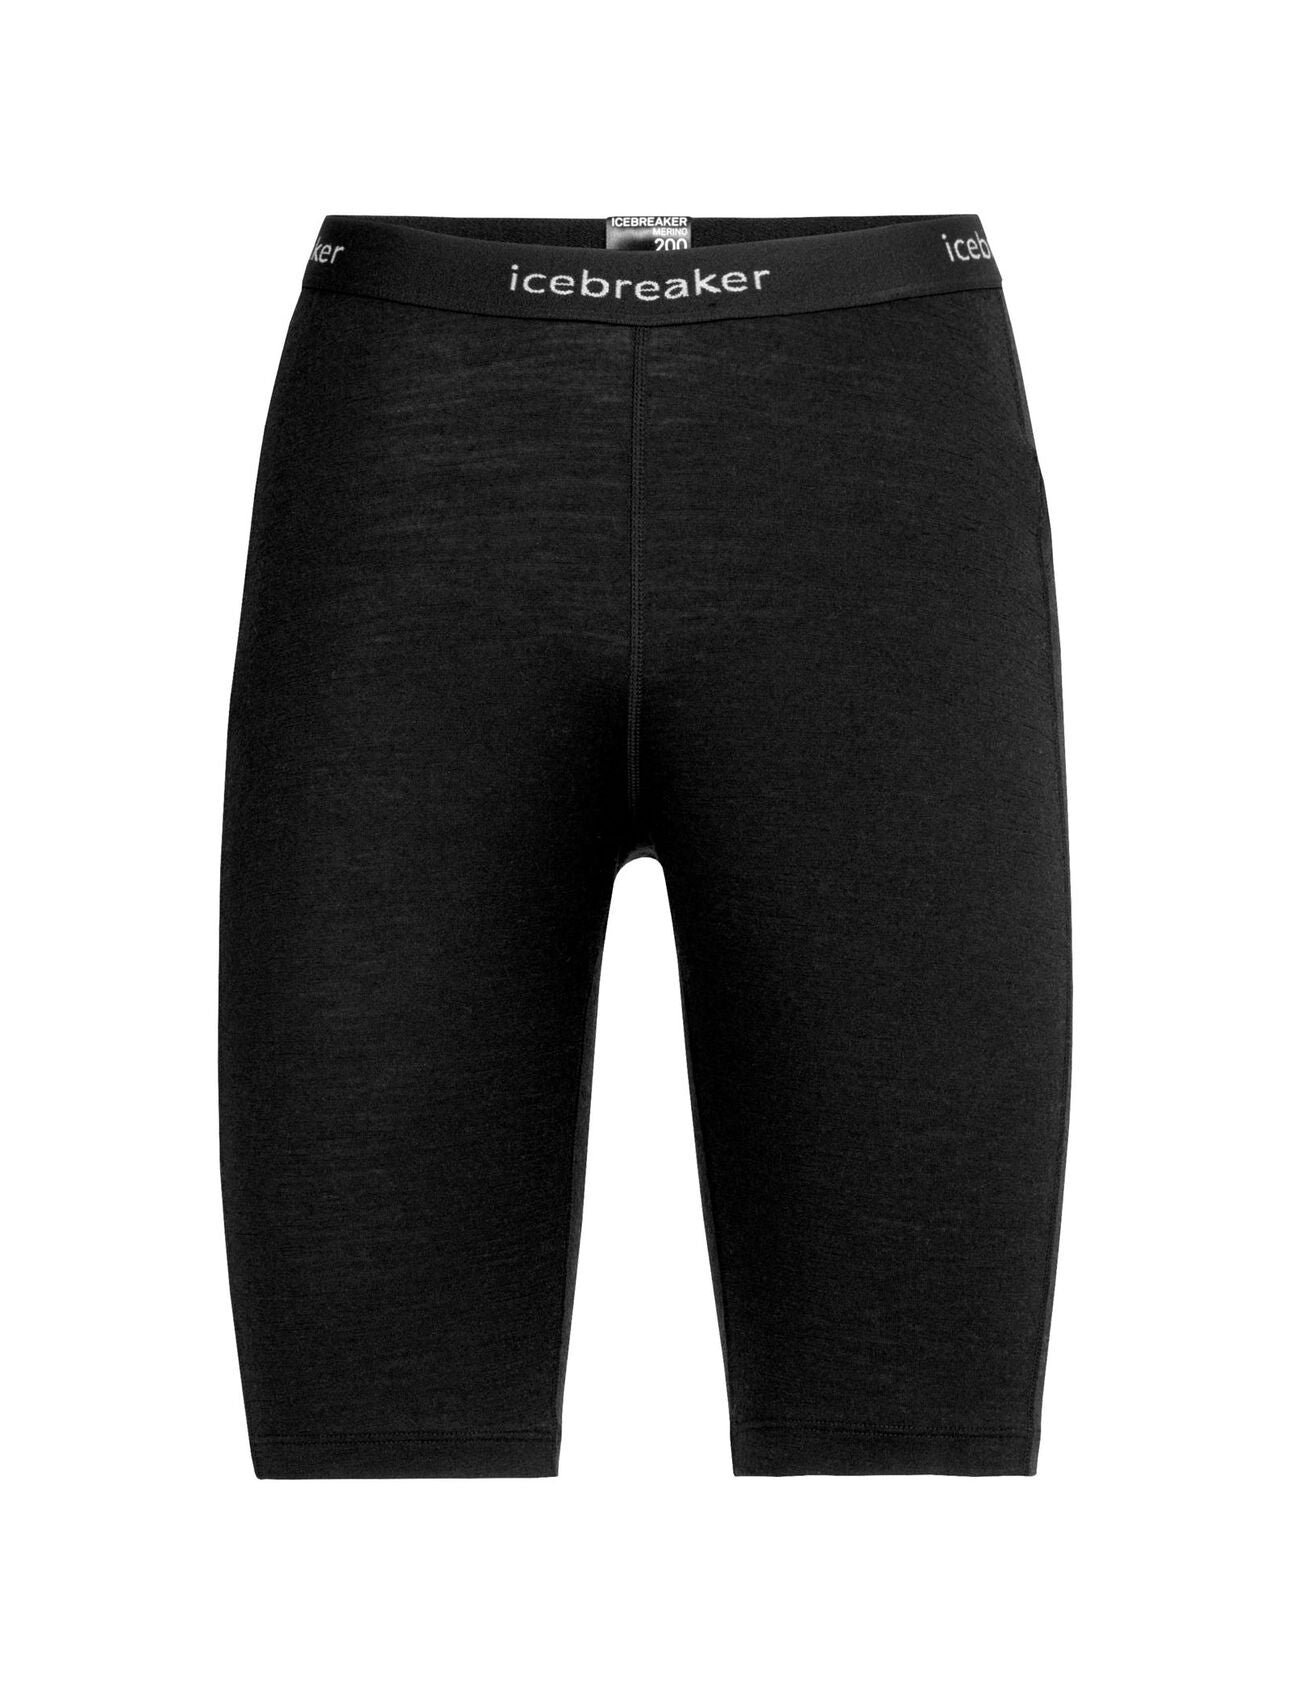 Icebreaker Women's 200 Oasis Boy Shorts Underwear